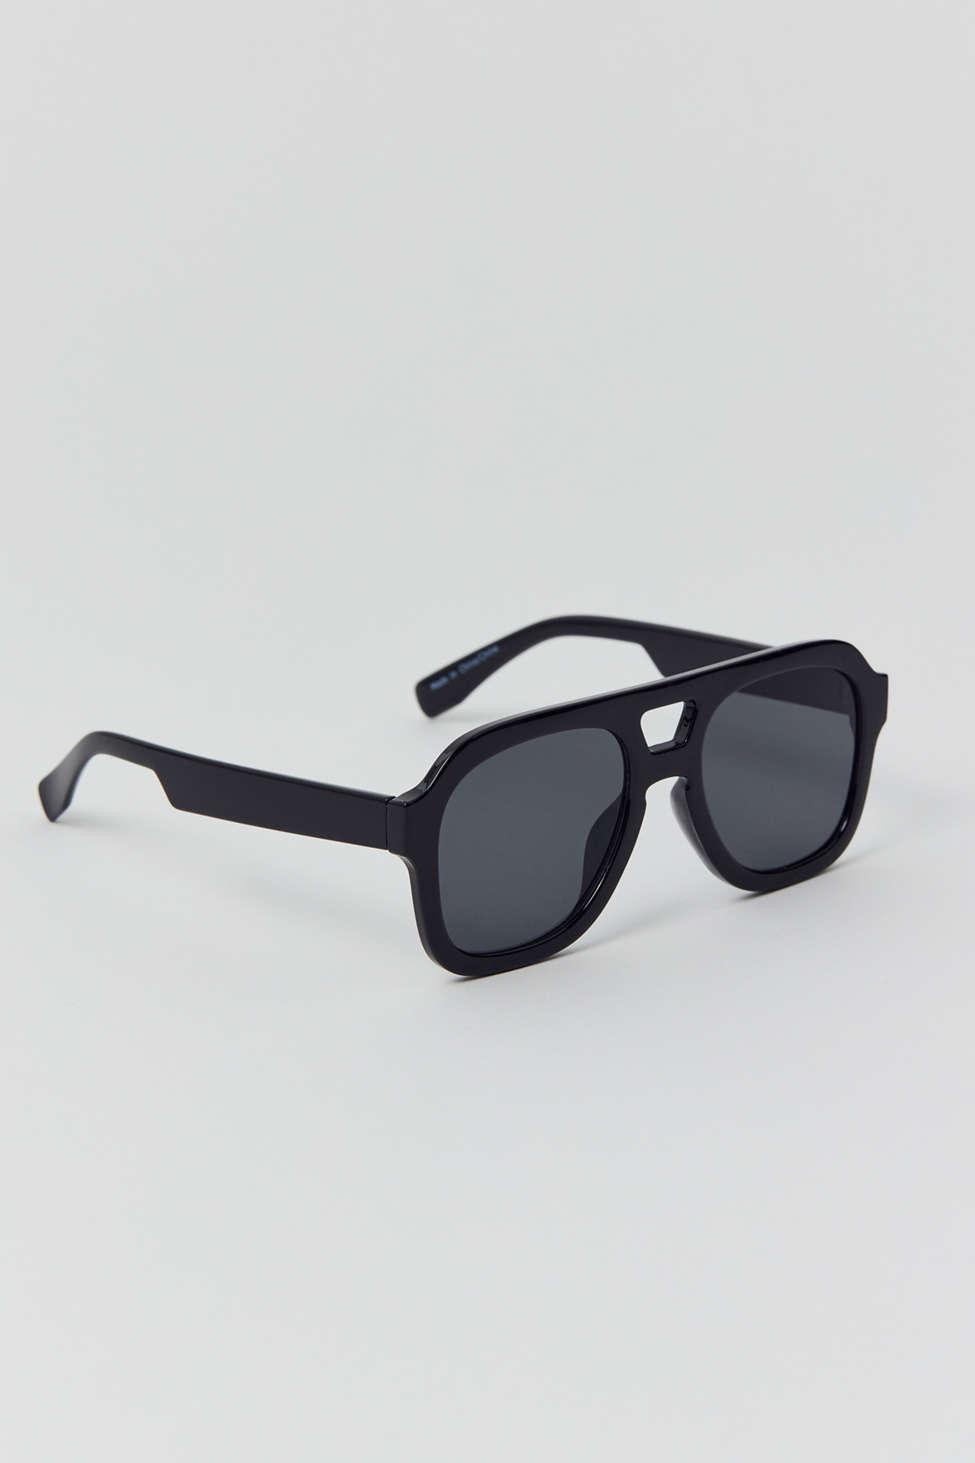 ZERO 13 Yellow Gold Mirror - Luxury Sunglasses, Designer Sunglasses |  Finest Seven